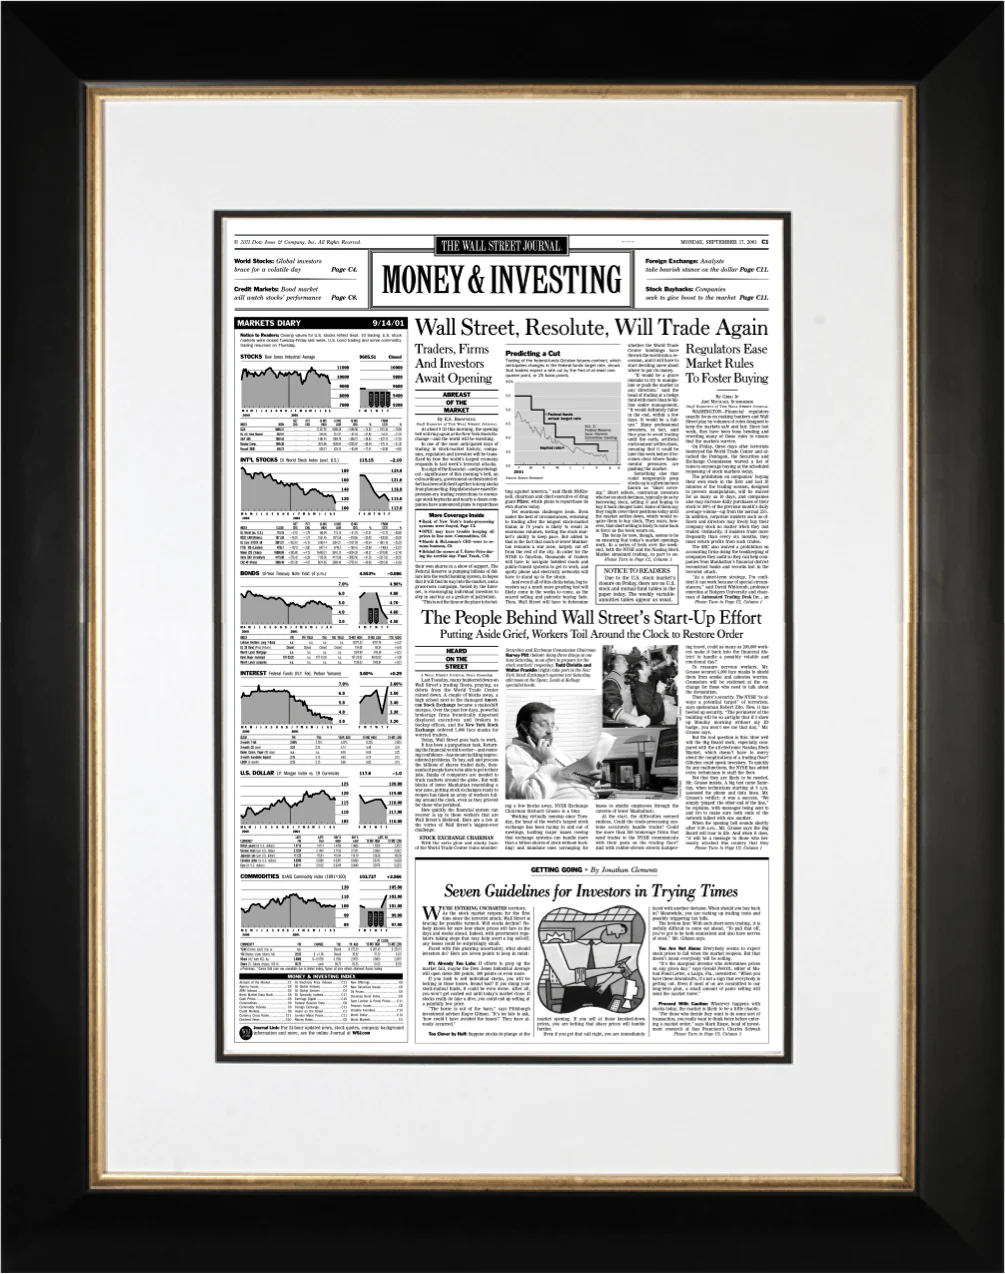 Wall Street Resolute | The Wall Street Journal Framed Reprint, September 17, 2001